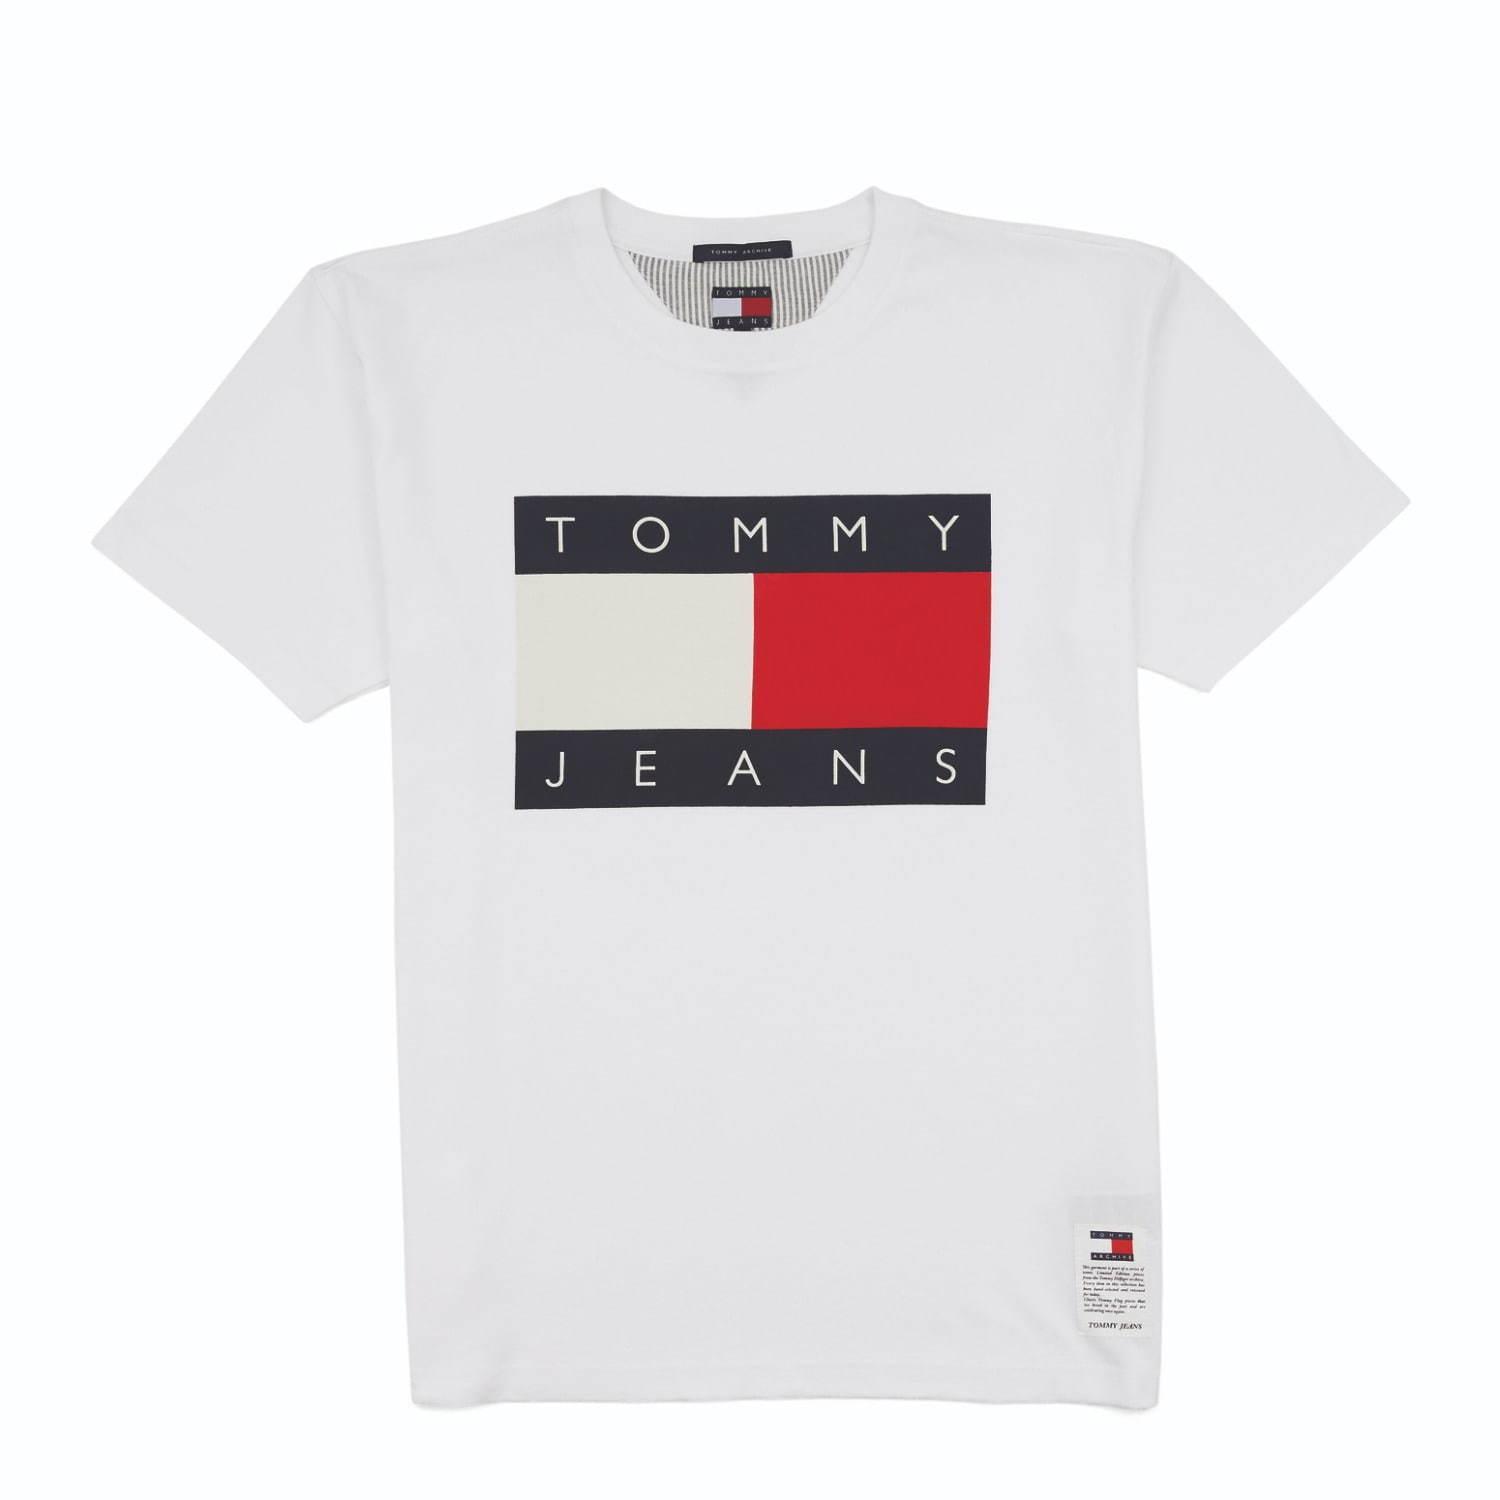 トミー ジーンズ、過去の名作Tシャツやスウェットを復刻 - アイコニックなロゴをメインに コピー